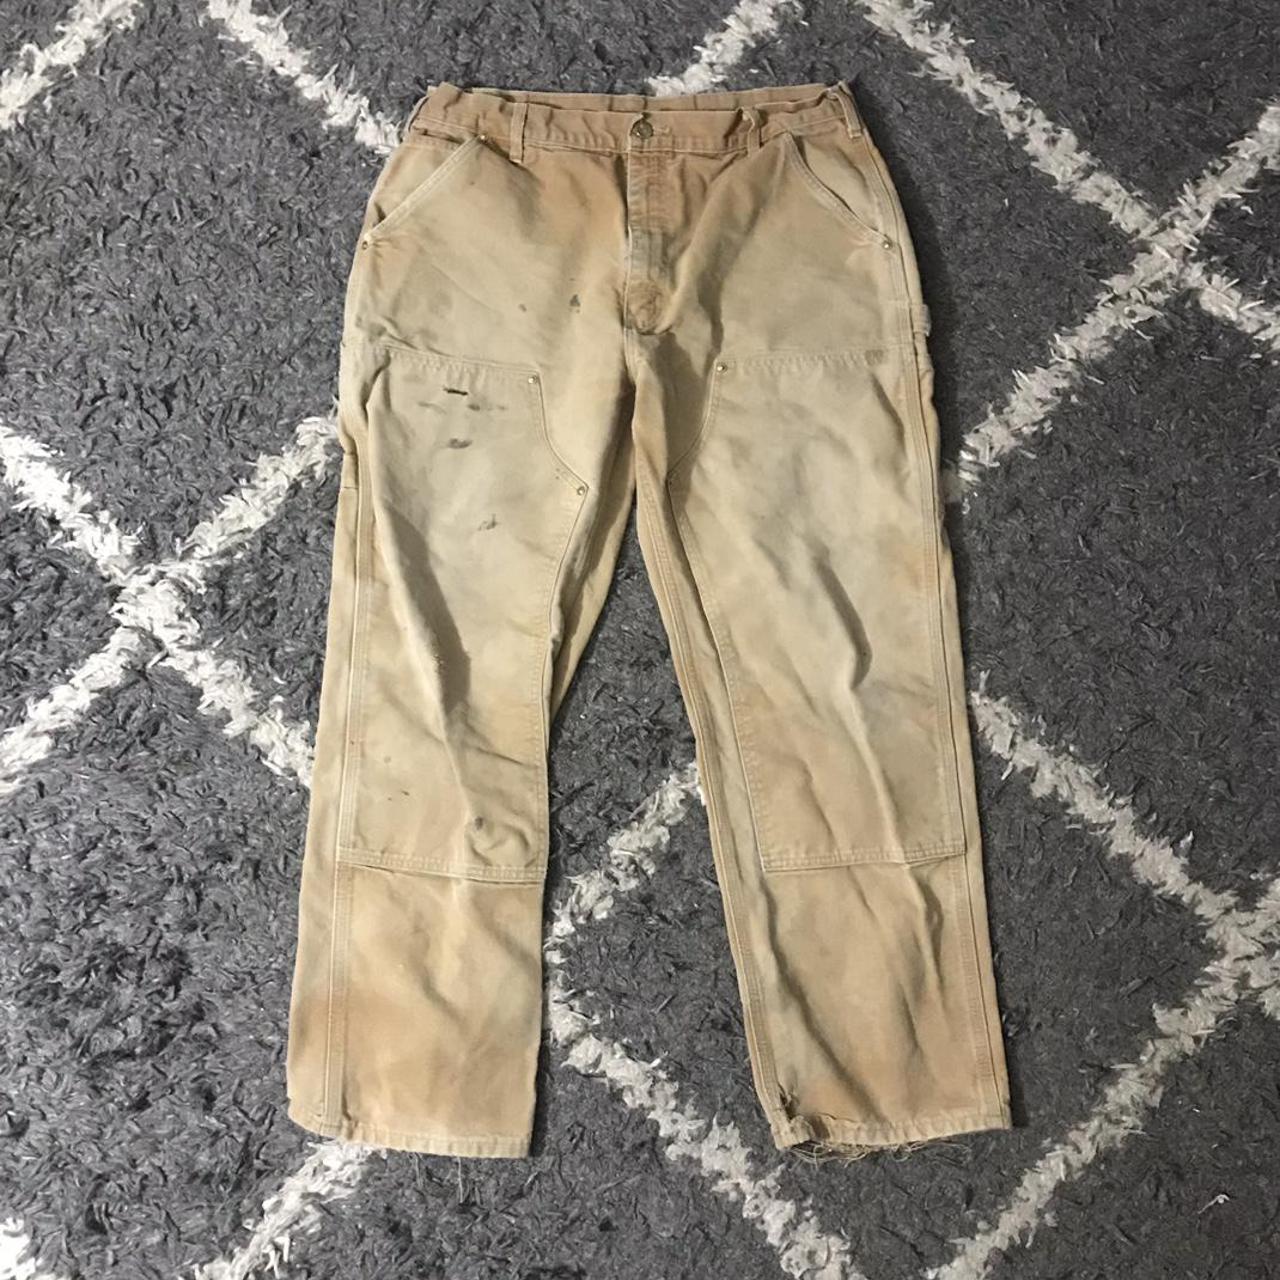 Carhartt Men's Tan and Brown Trousers (3)